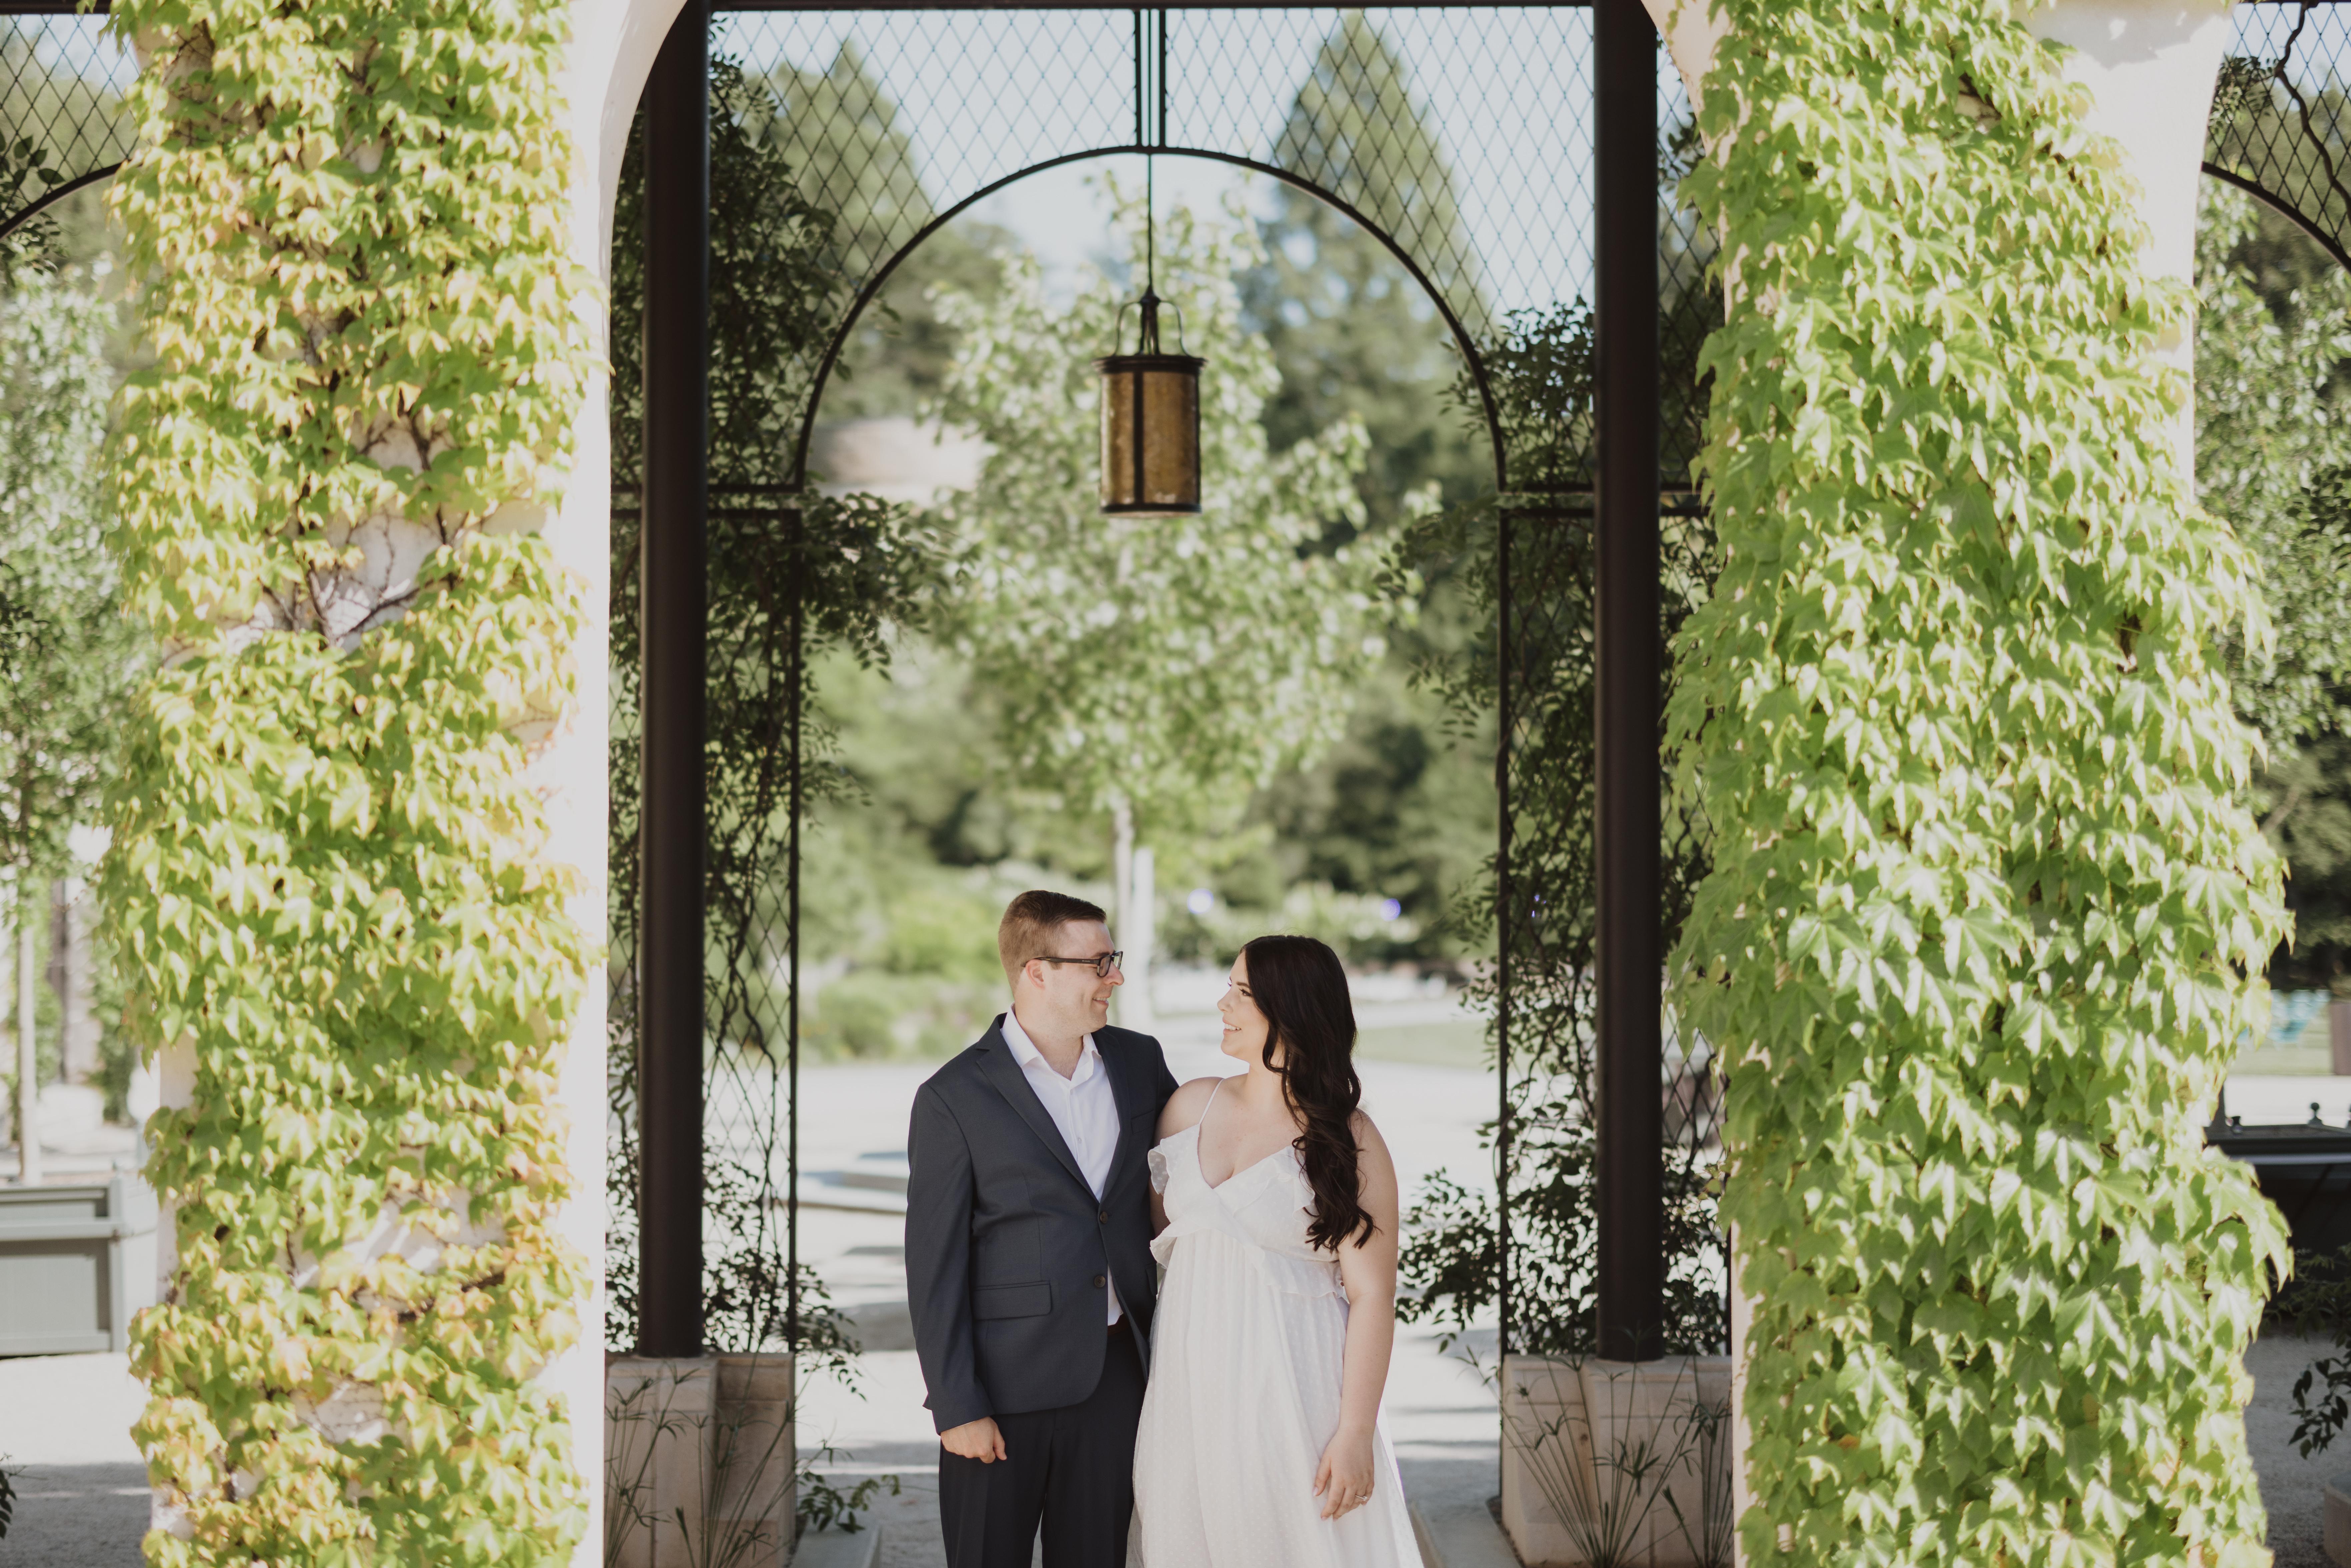 The Wedding Website of Lauren Willard and Joshua Smith